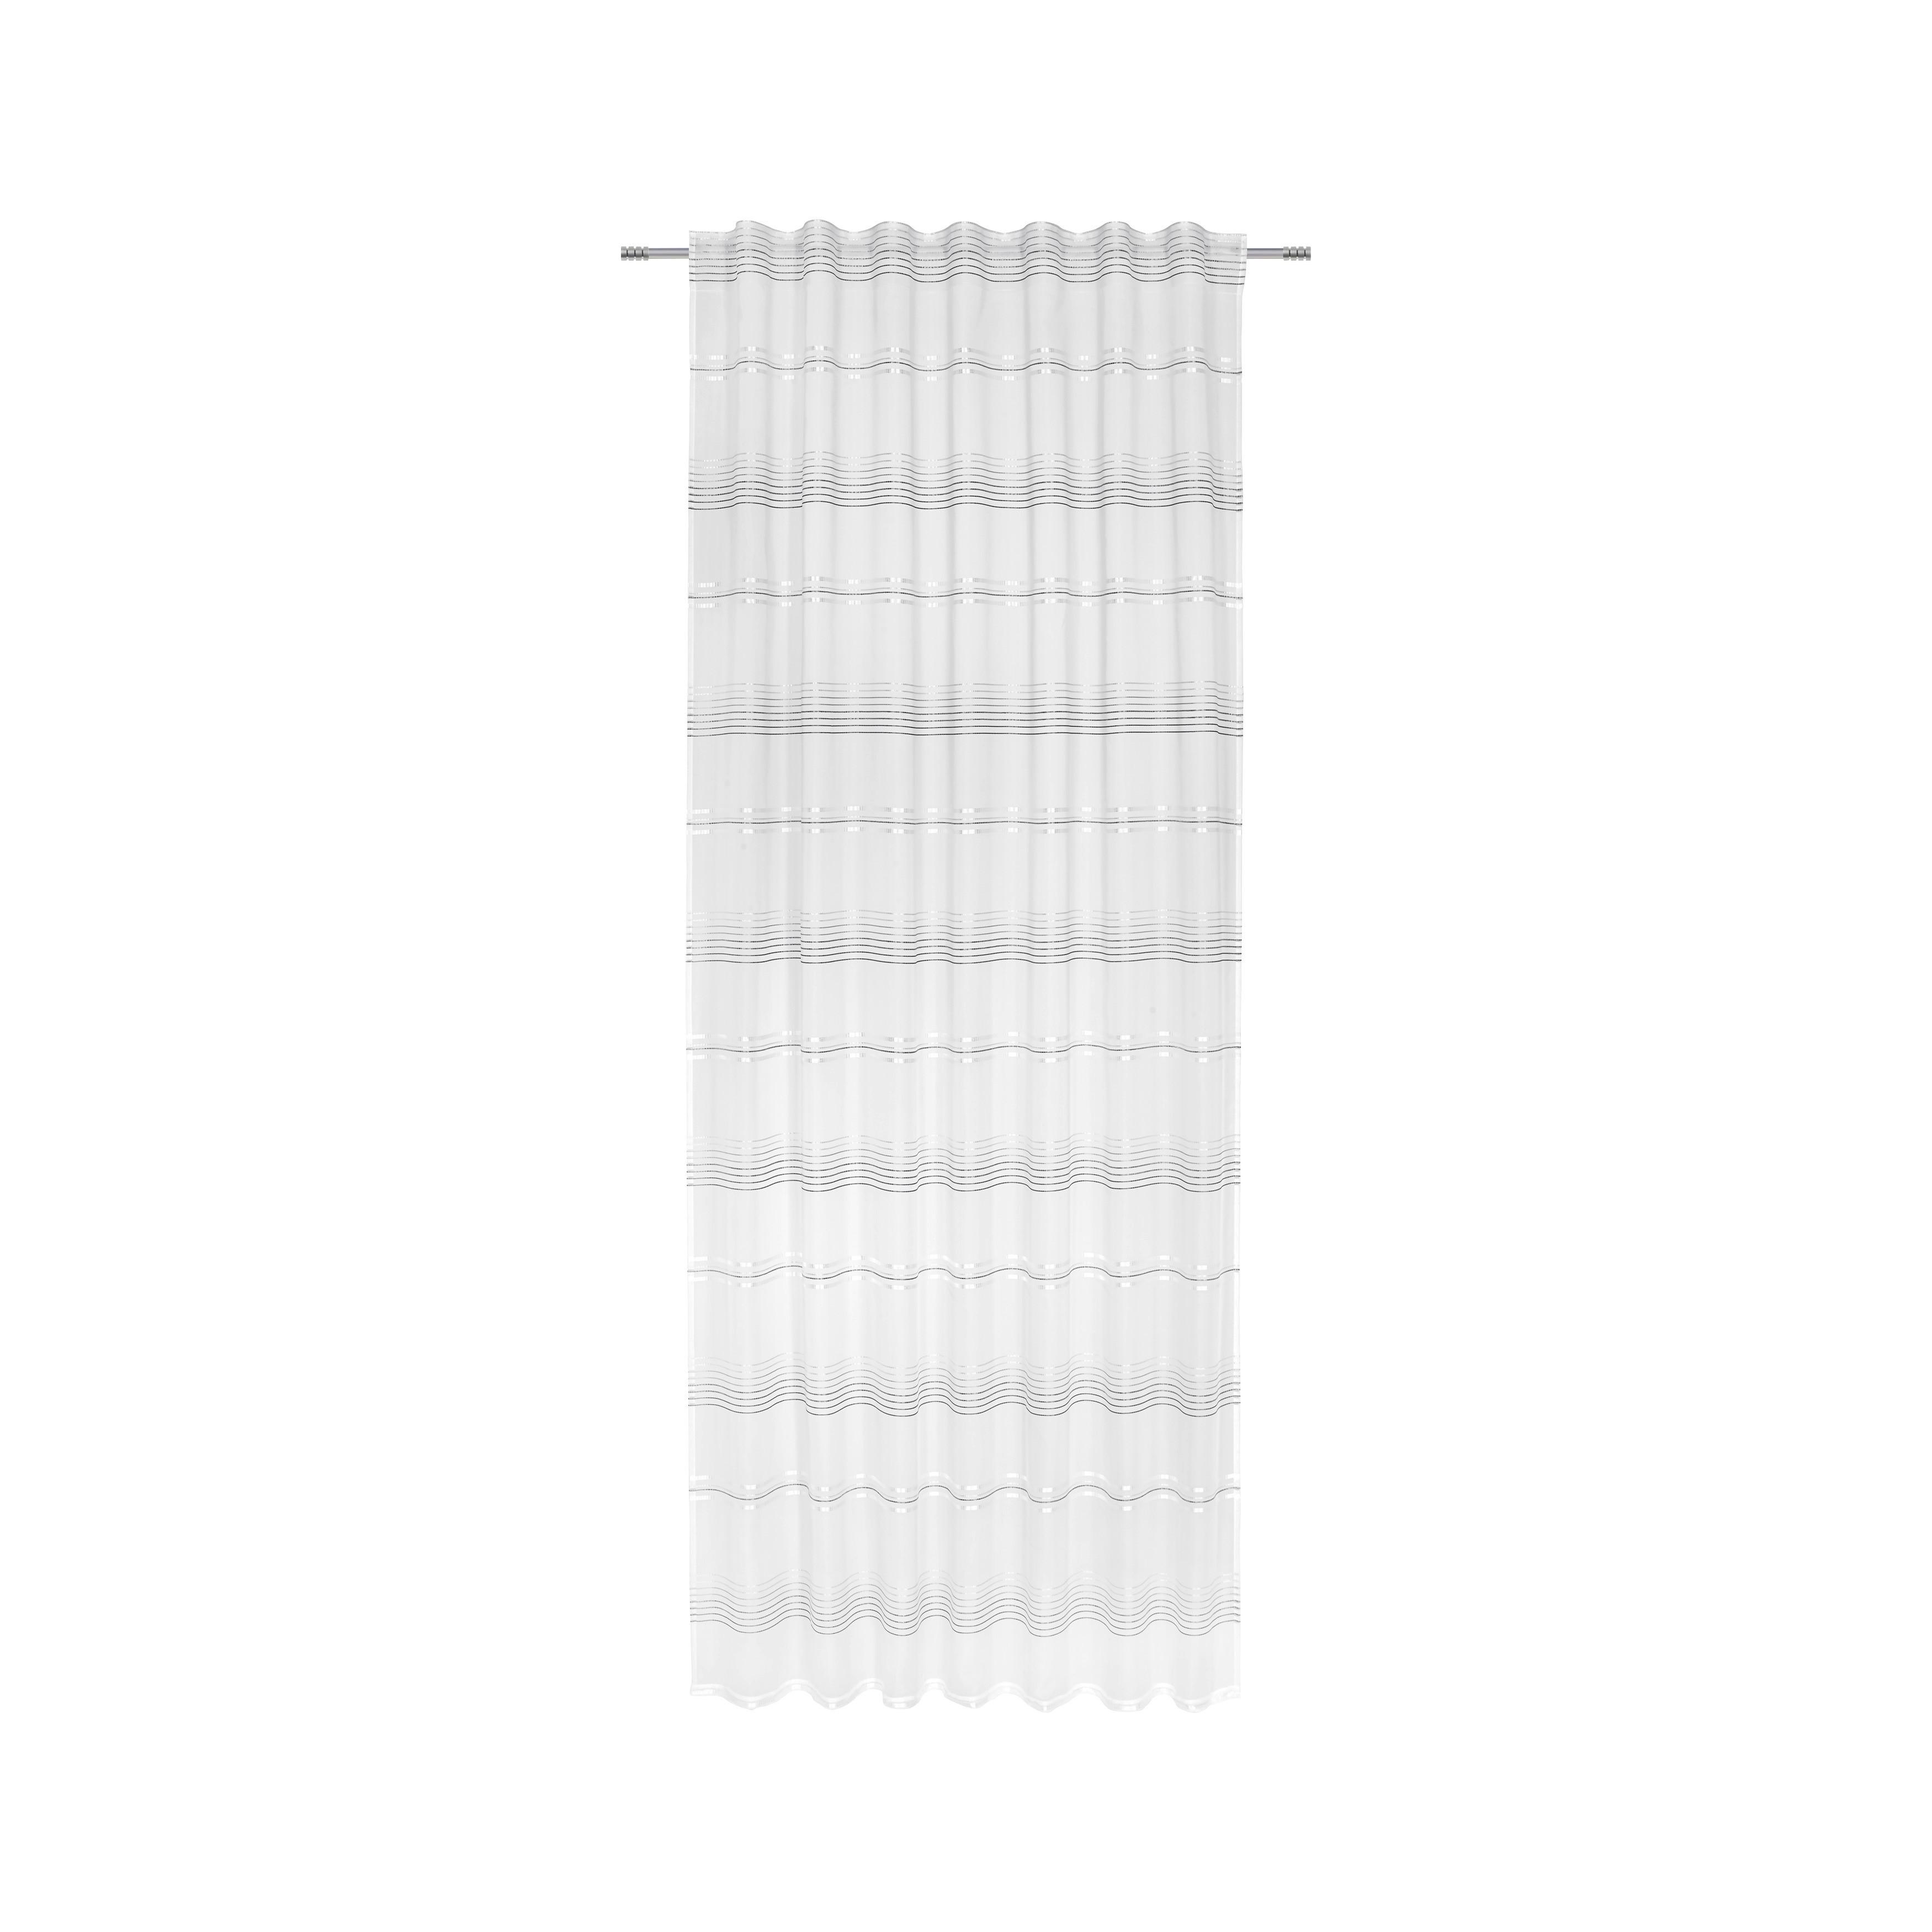 Készfüggöny Louis 140/245 - Szürke/Fehér, konvencionális, Textil (140/245cm) - Modern Living